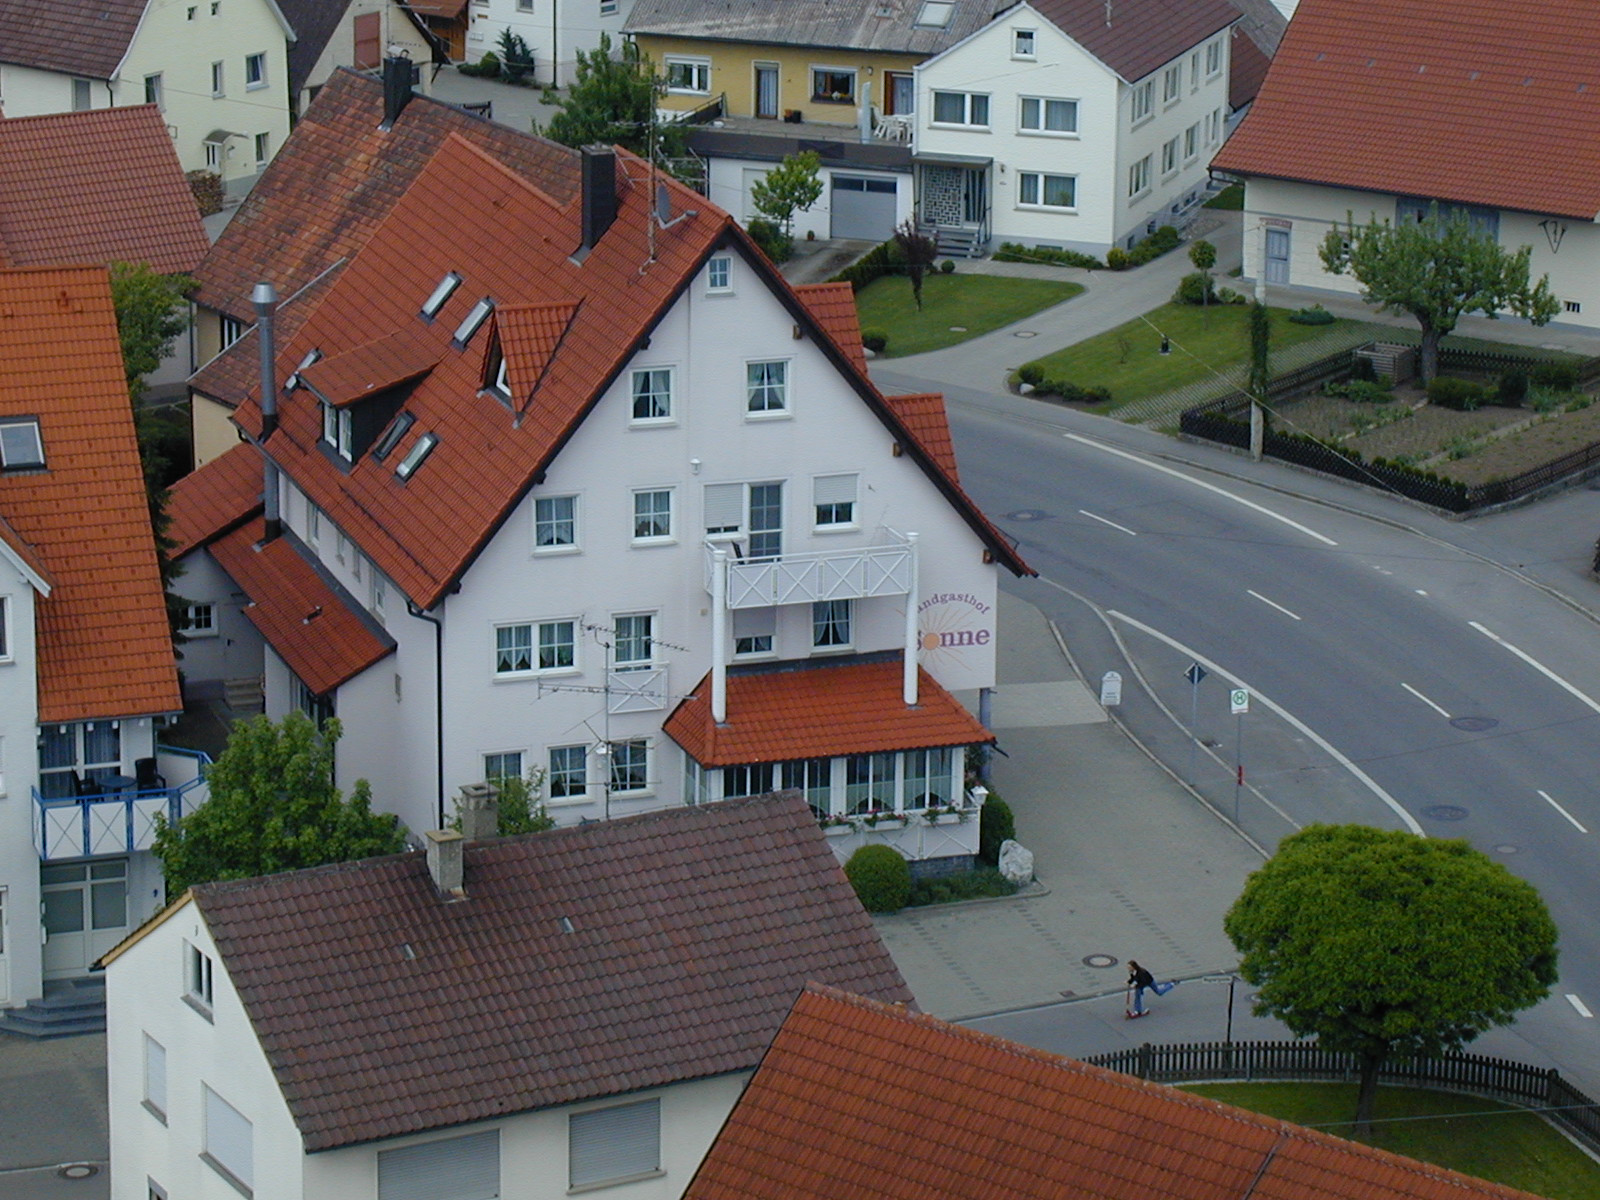  Blick vom Kirchturm Unlingen 